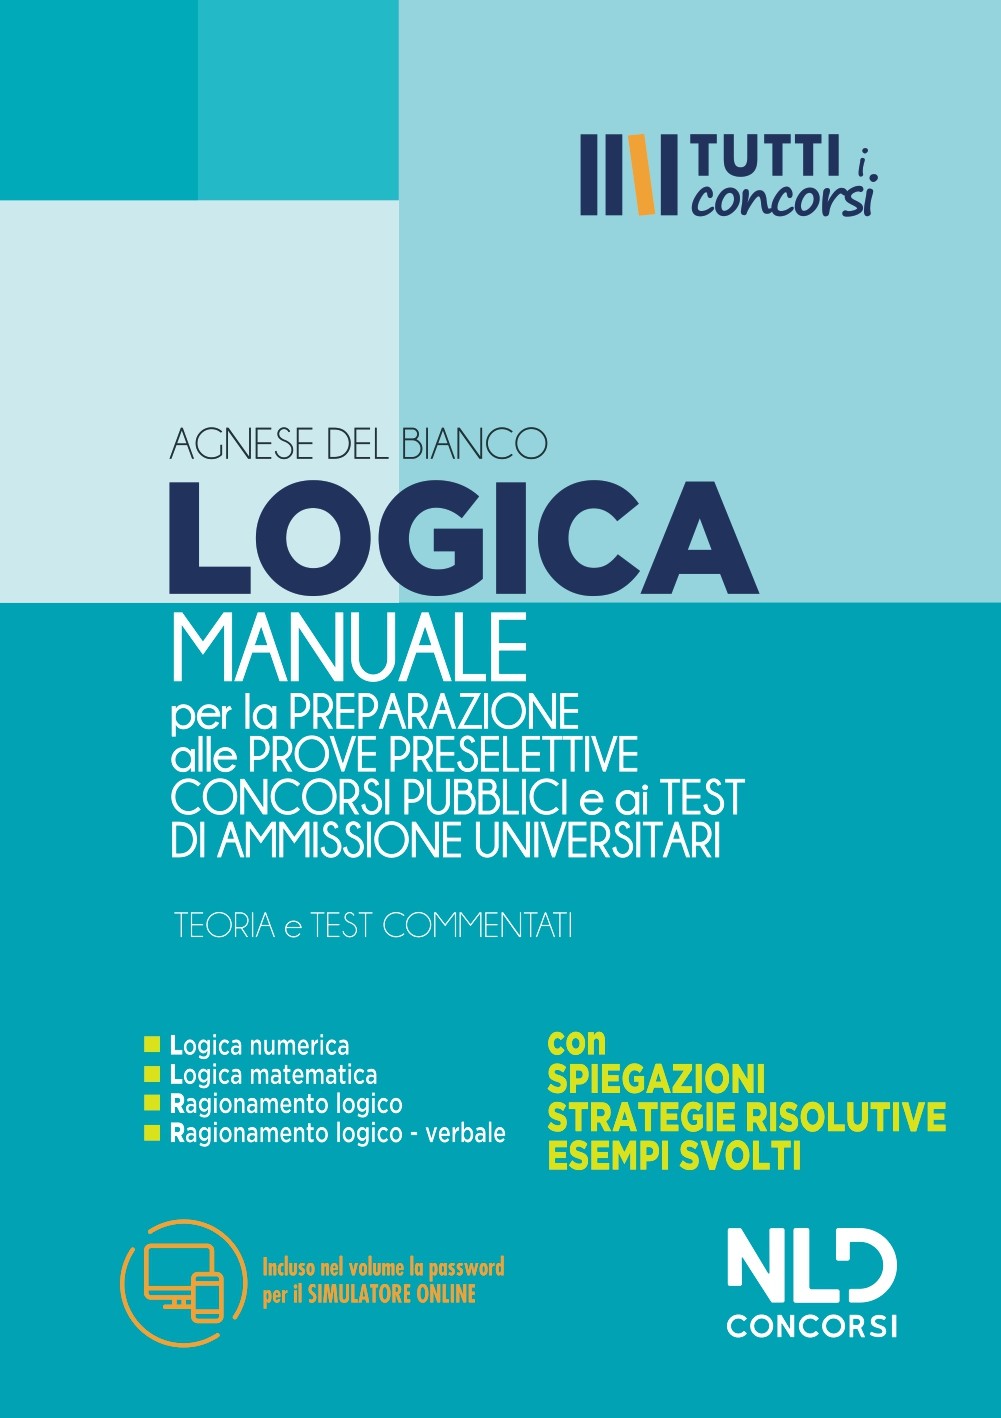 Manuale di Logica per la preparazione alle prove preselettive Concorsi Pubblici e ai Test di Ammissione Universitari